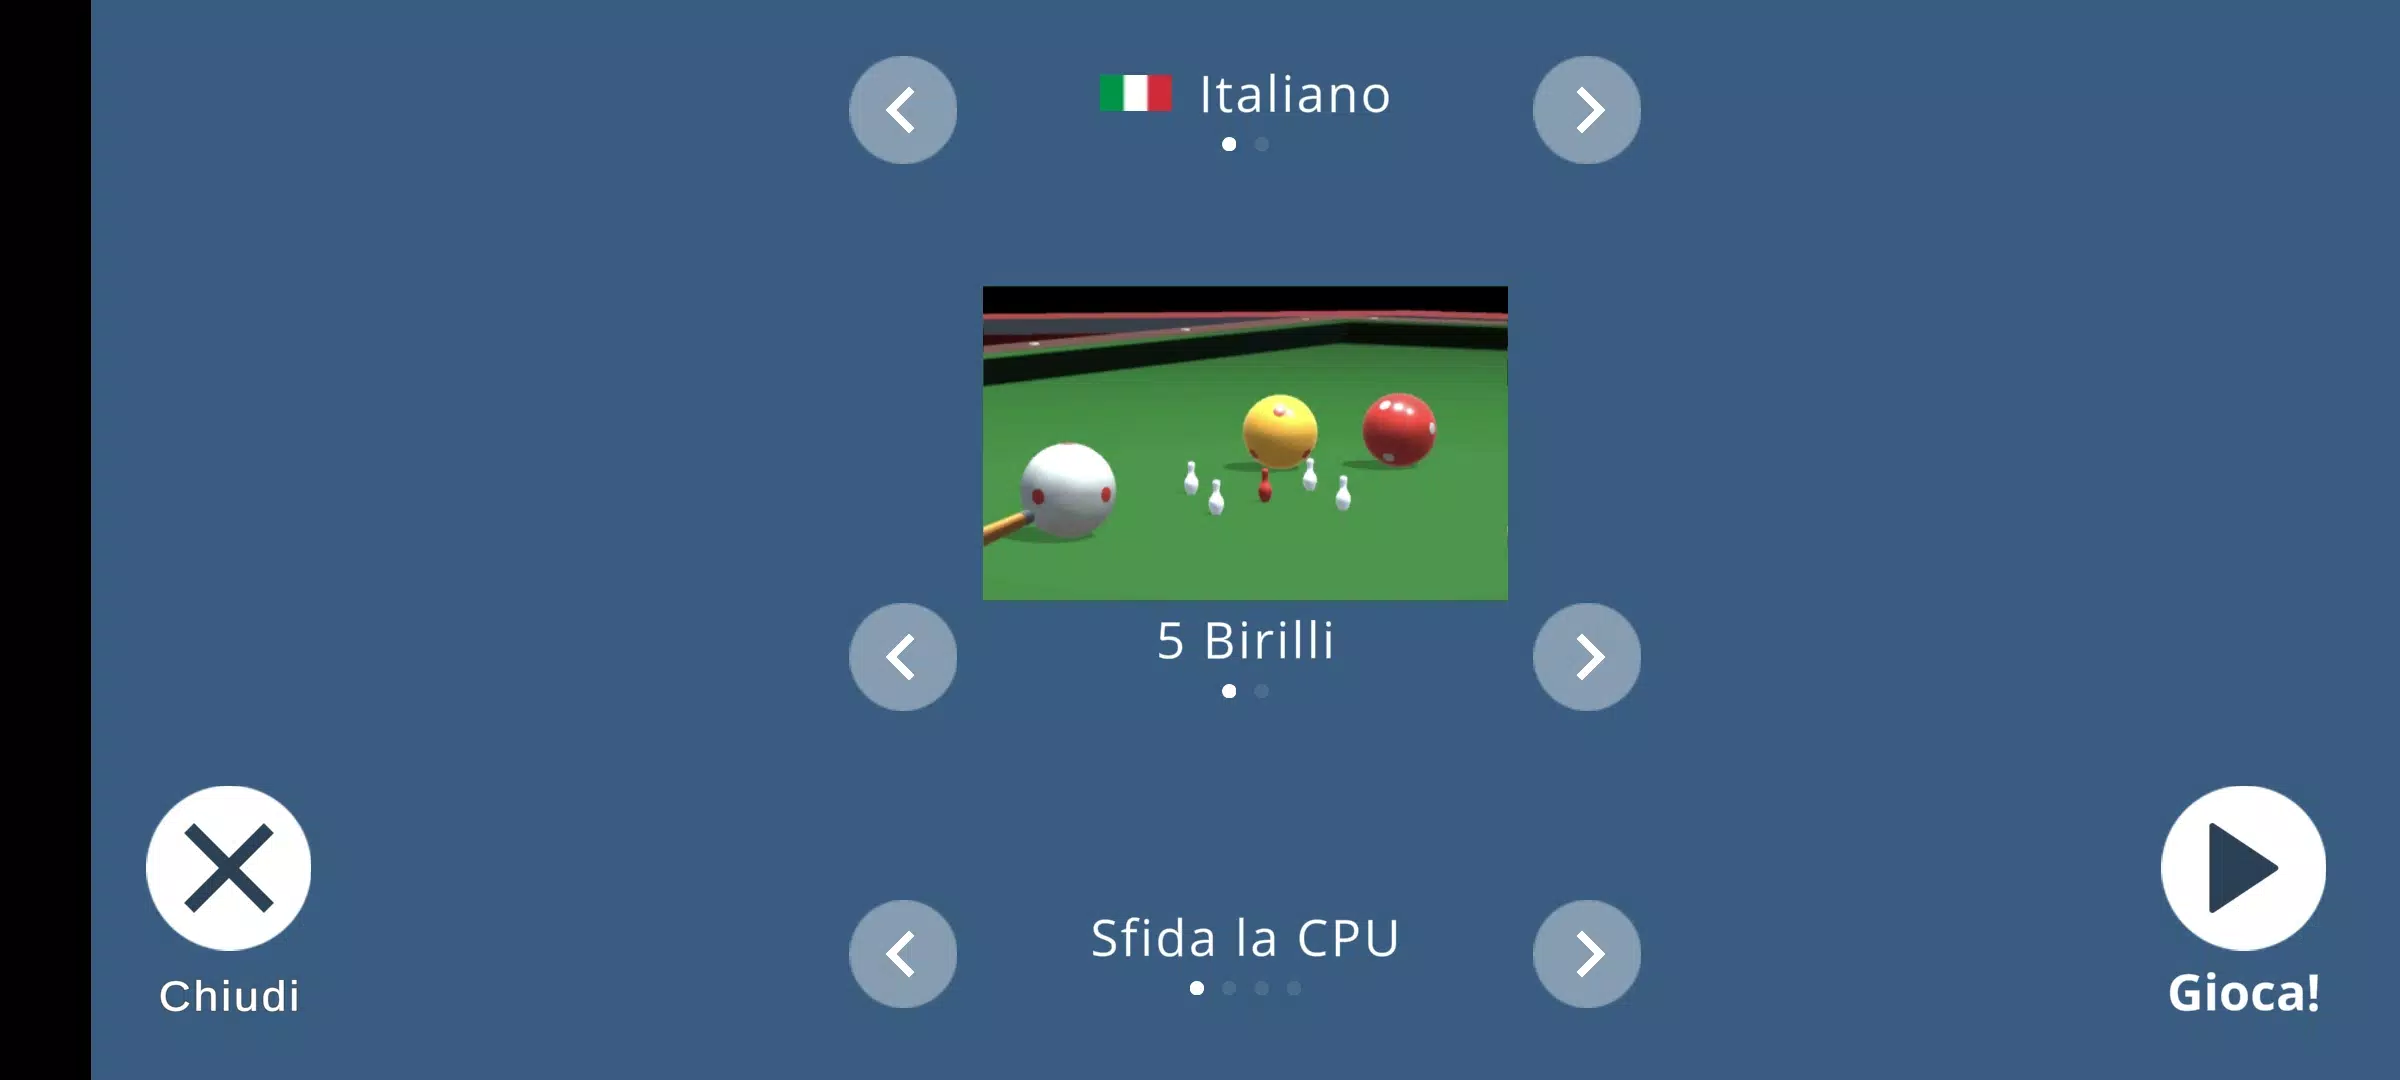 Biliardo all'Italiana APK for Android Download